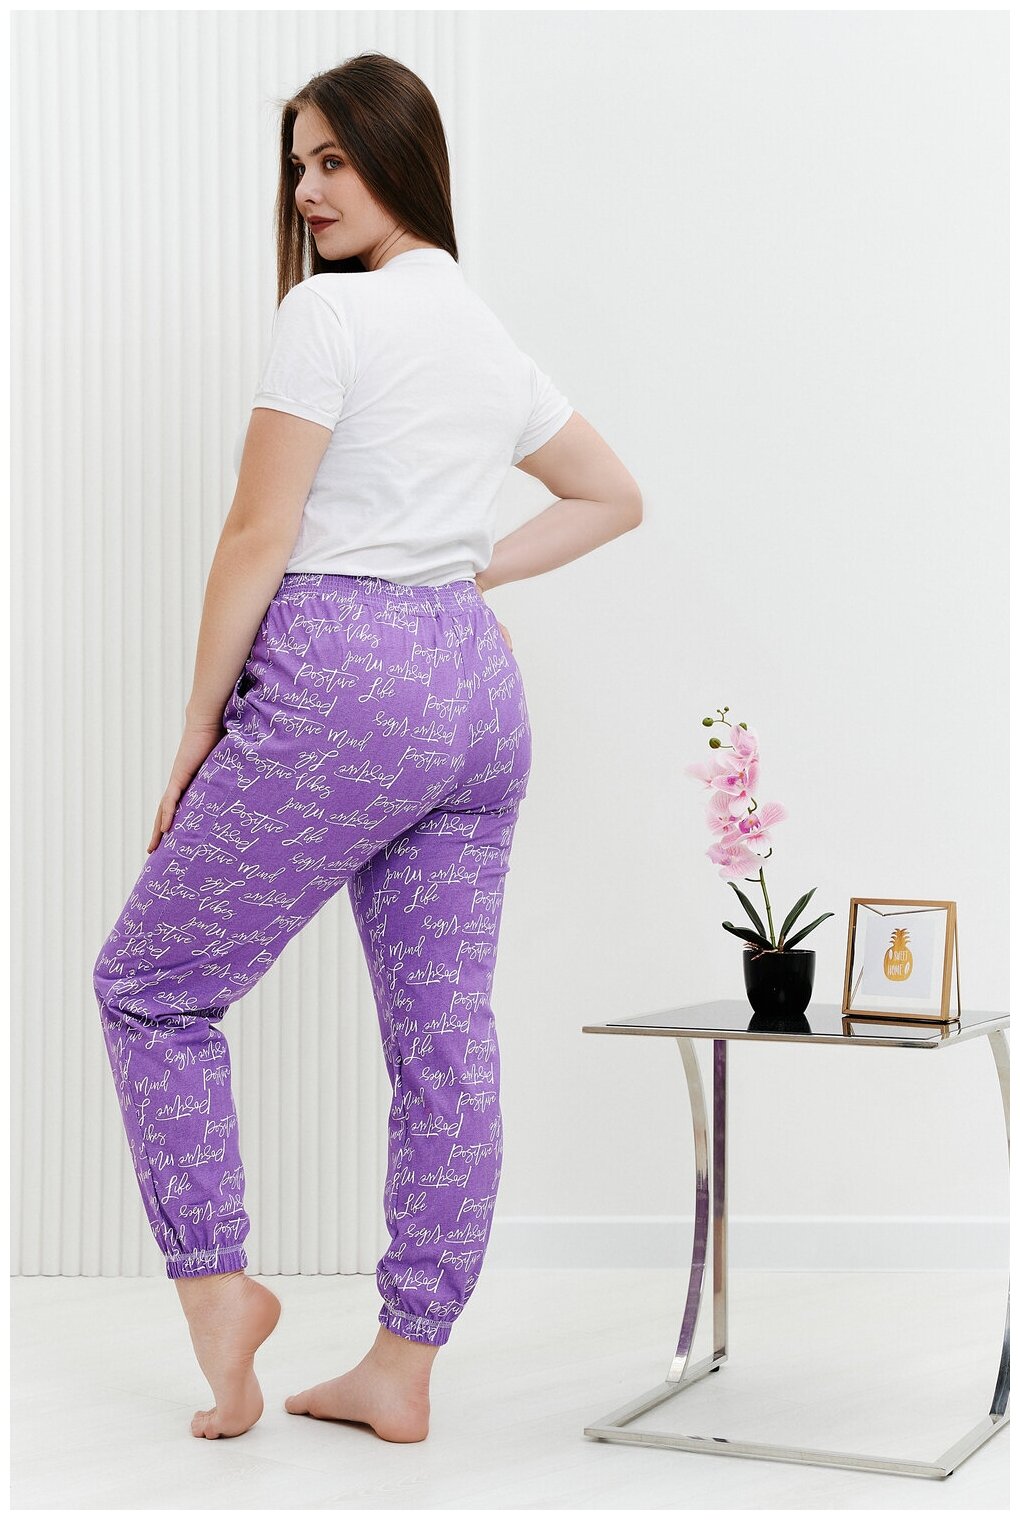 Брюки Натали, без рукава, пояс на резинке, карманы, размер 54, фиолетовый - фотография № 4